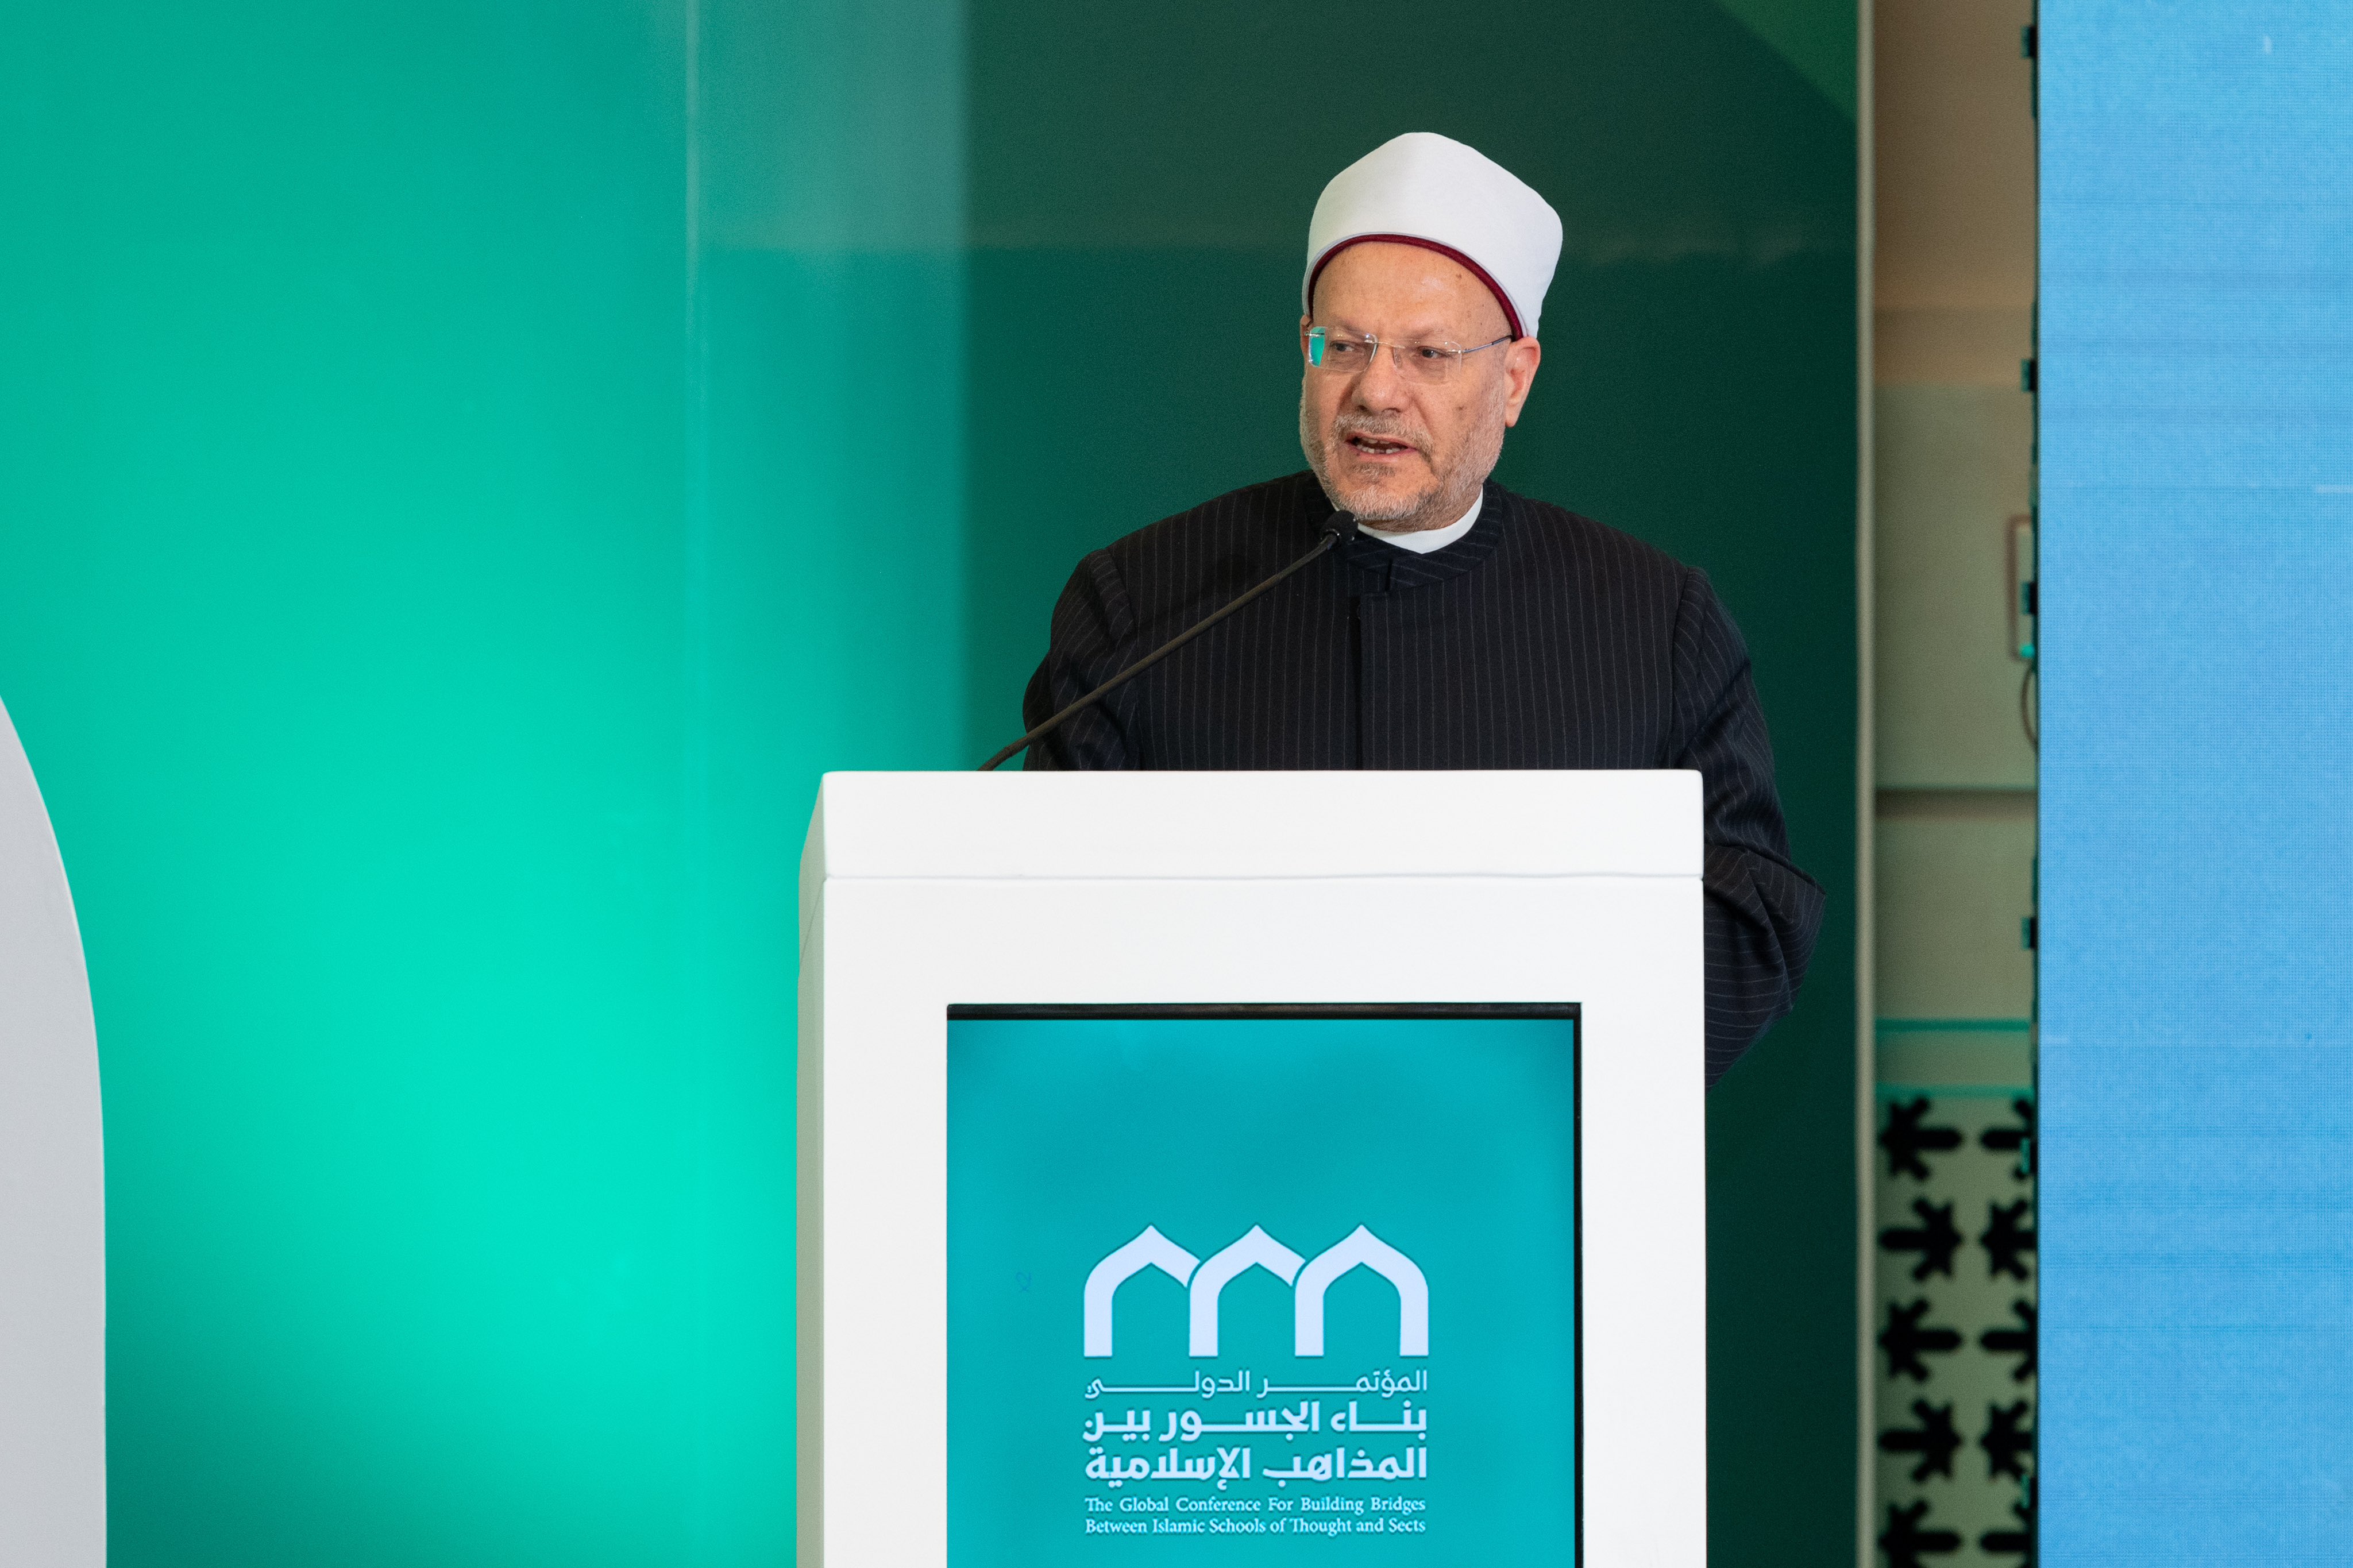 Yang Mulia Mufti Mesir, Syekh Dr. Shawki Allam, dalam pidatonya pada sesi penutupan konferensi: “Membangun Jembatan Antar Mazhab Islam”: